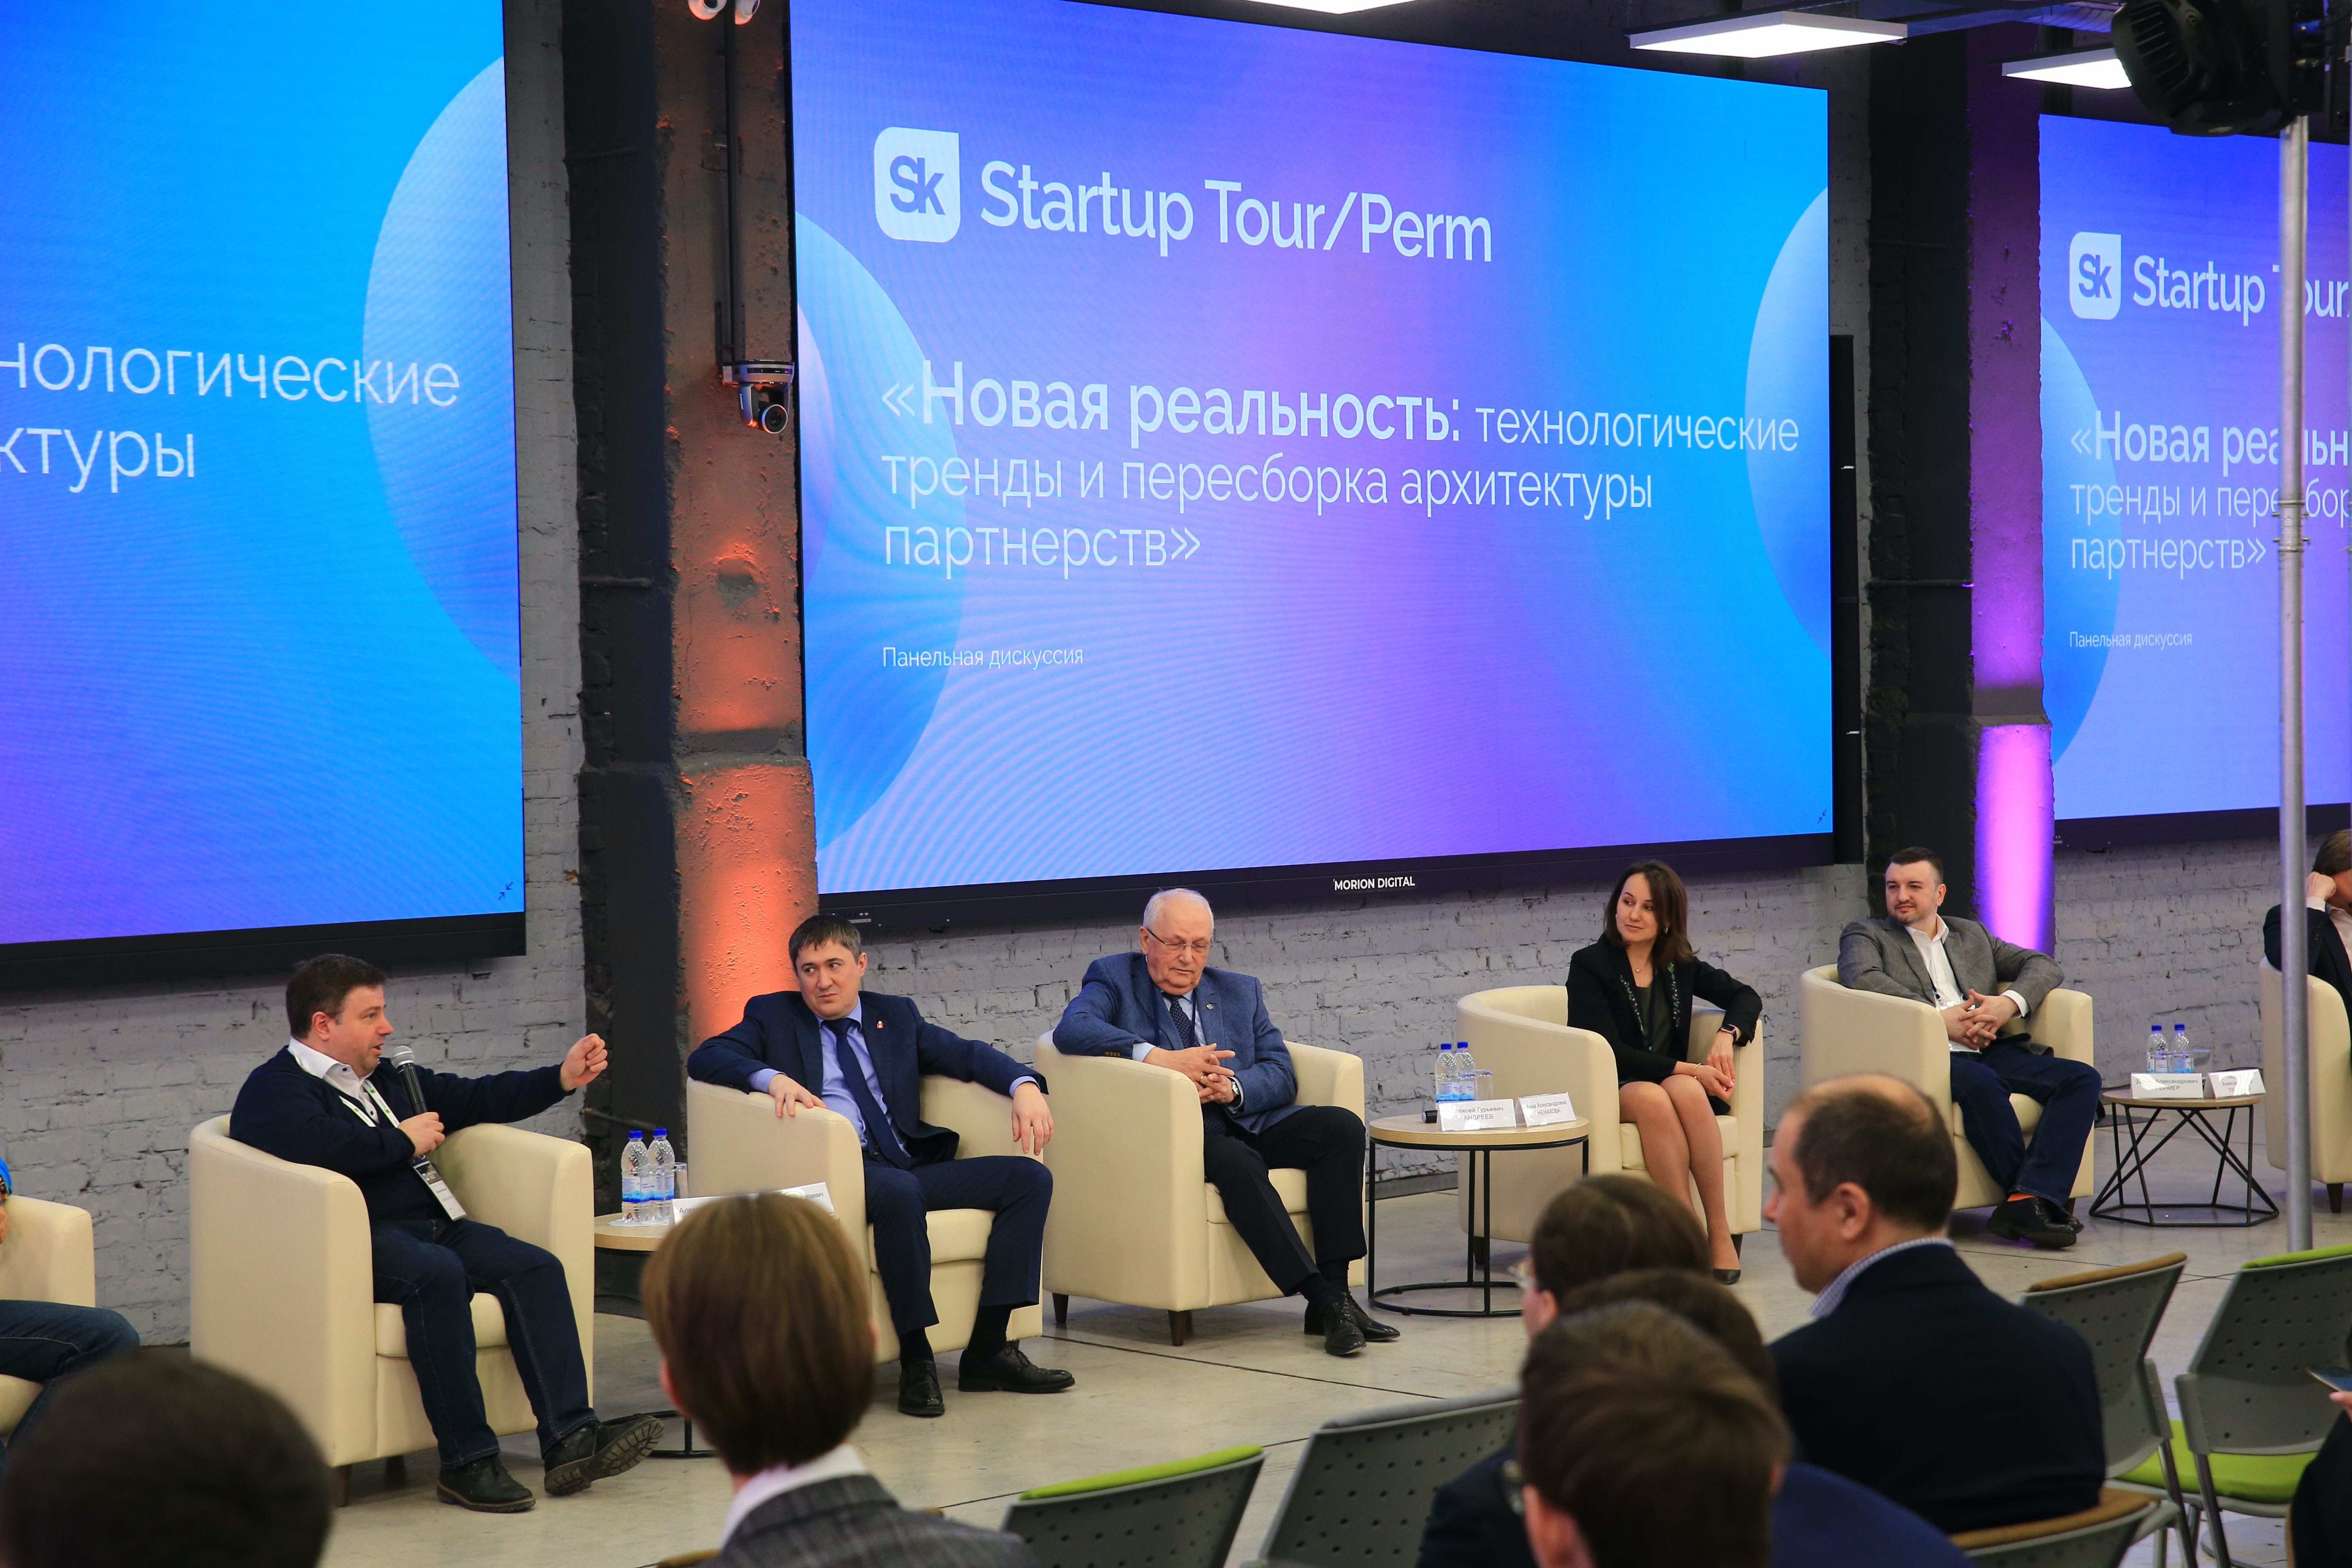 Startup Tour «Сколково» пройдет в Перми в пятый раз